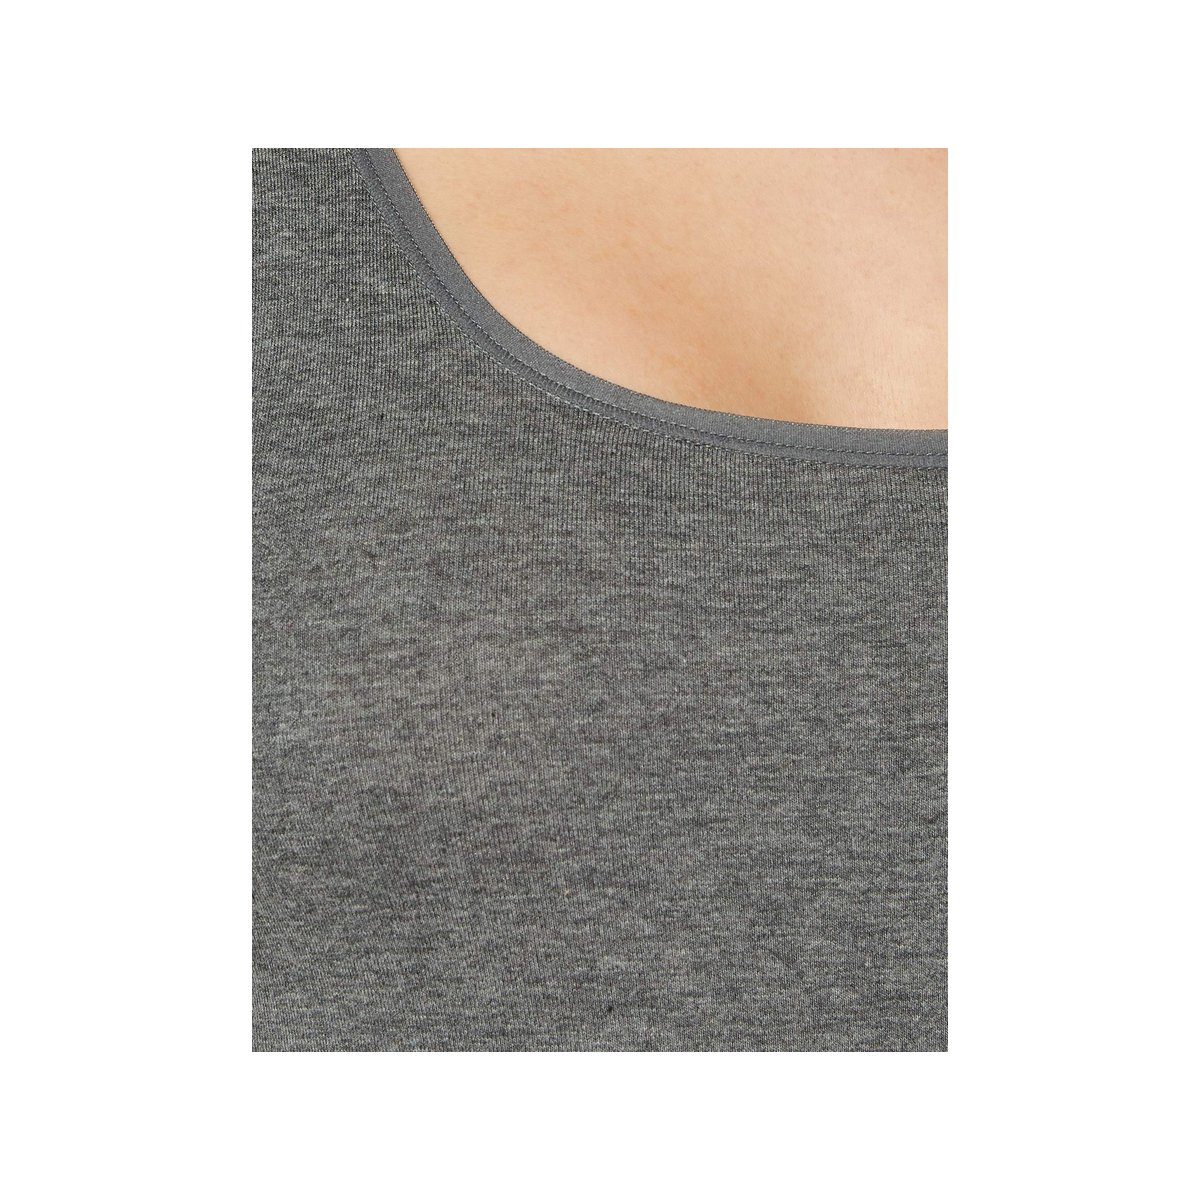 Skiny Unterhemd anthrazit (keine Angabe, anthra Angabe) keine 9599 1-St., melange